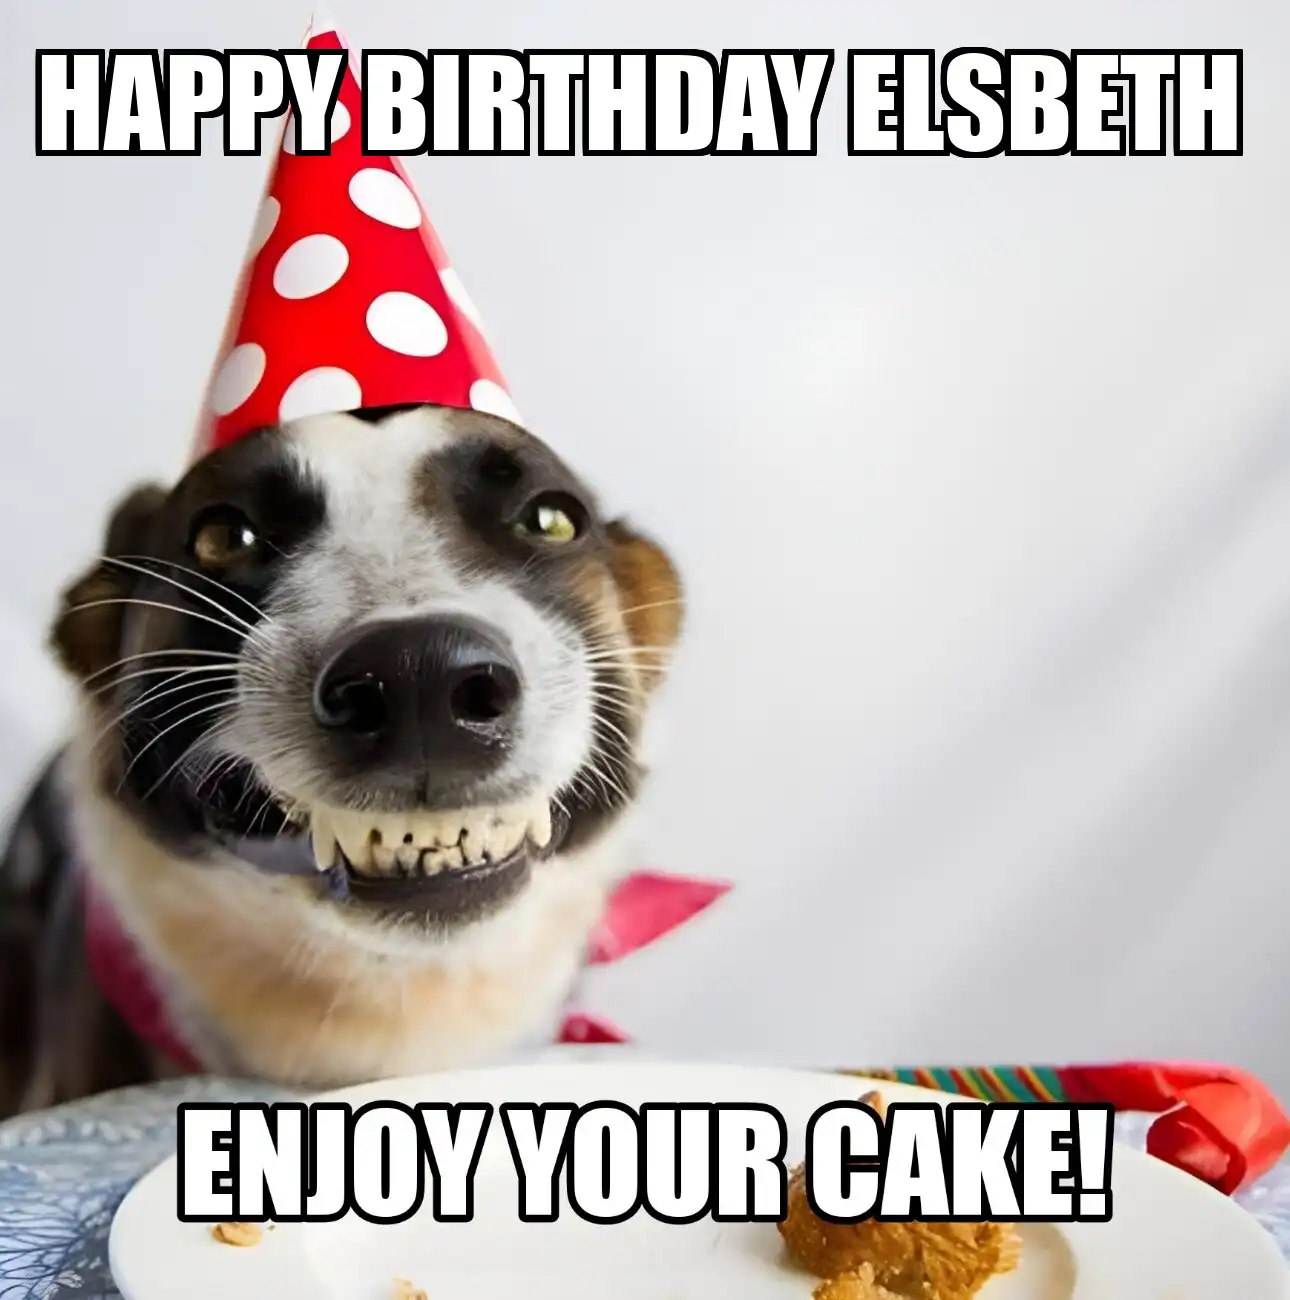 Happy Birthday Elsbeth Enjoy Your Cake Dog Meme